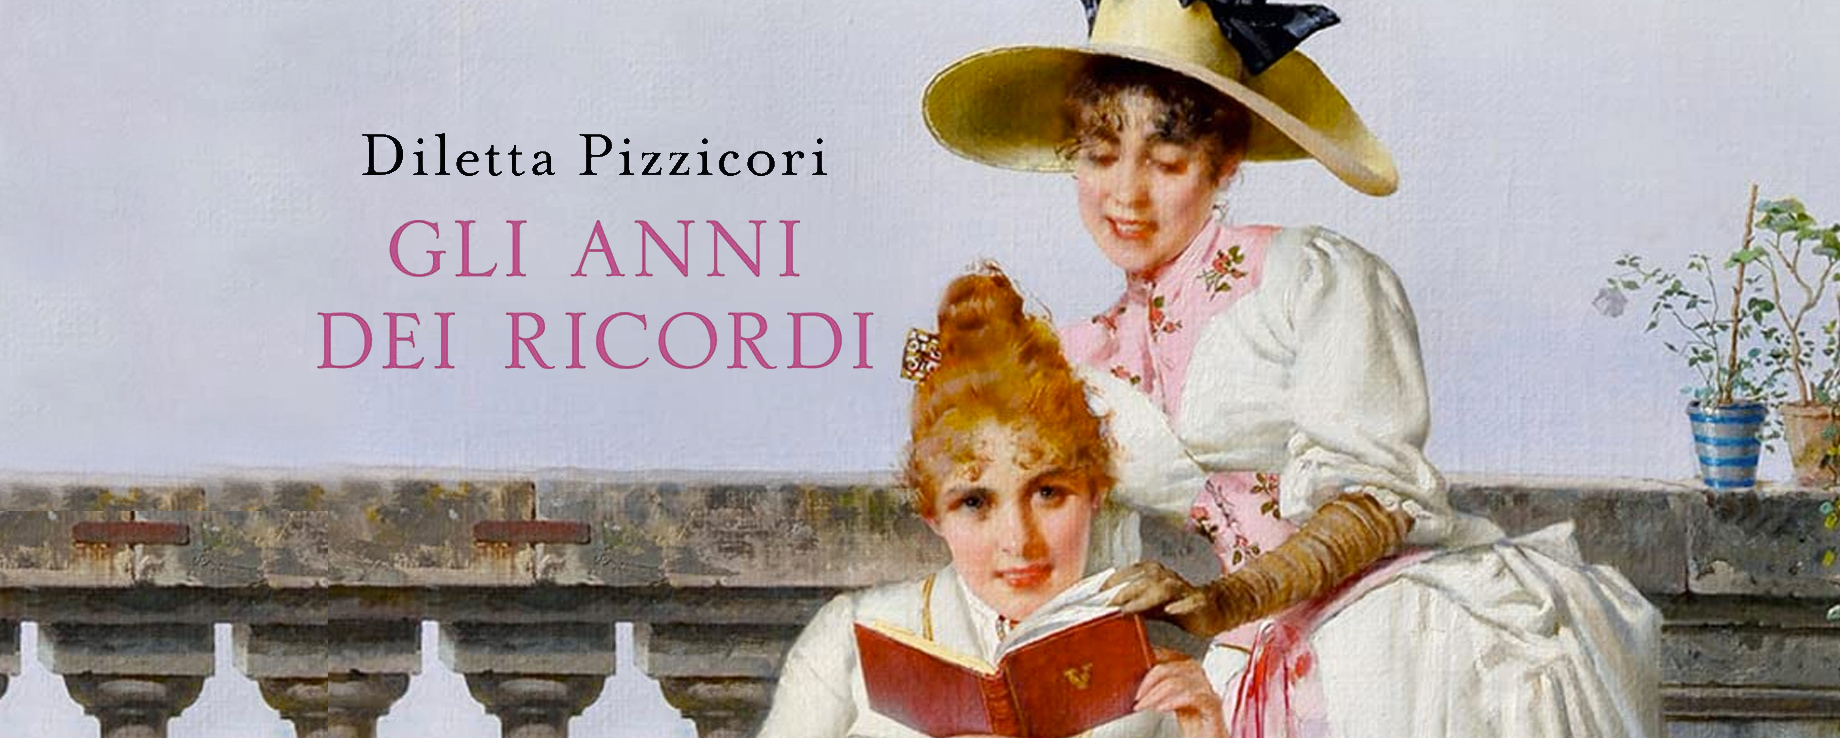 Diletta Pizzicori ci racconta la storia della sua saga famigliare